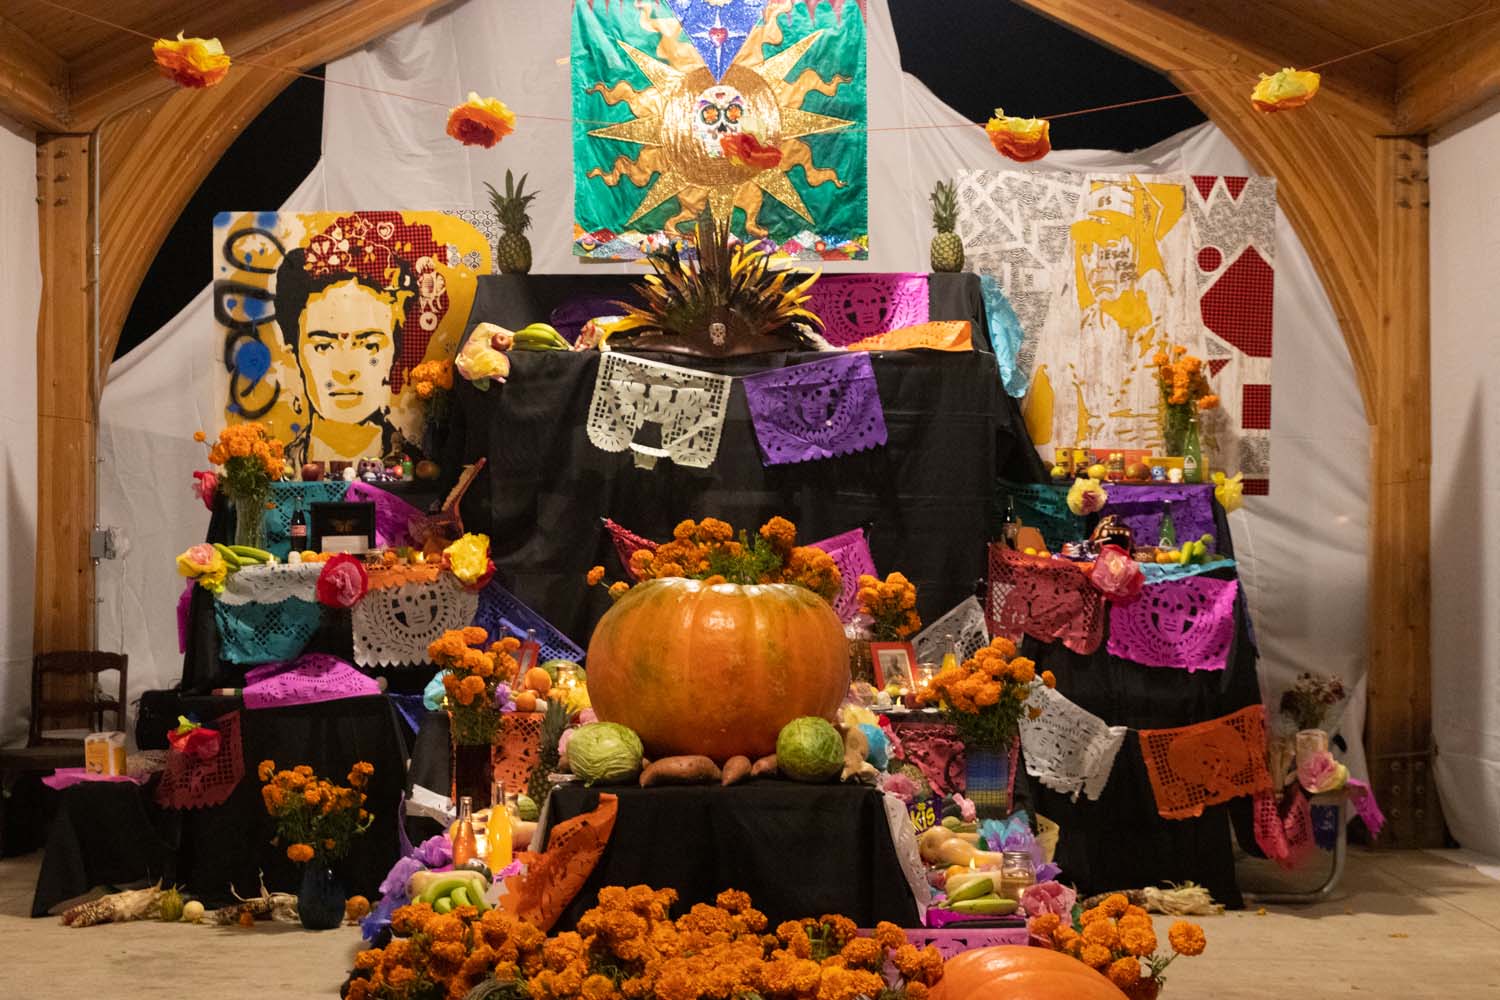 Iowa City celebrates Día de los Muertos at a public ofrenda exhibit ...